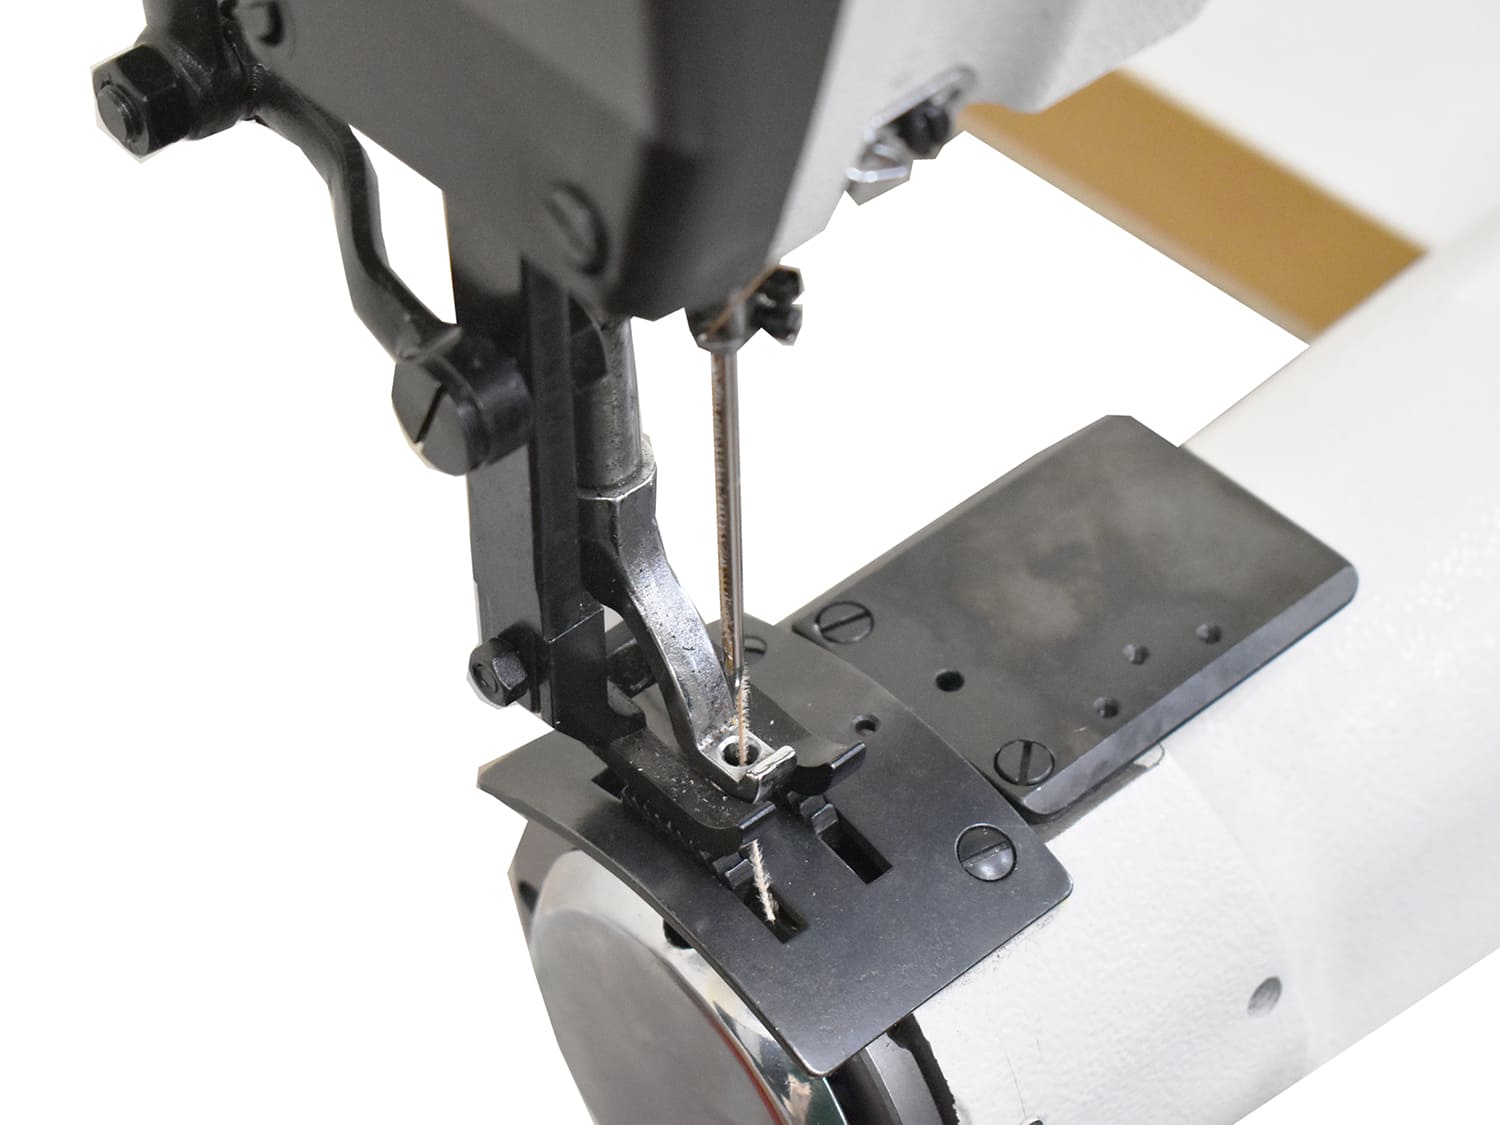 Промышленная швейная машина для сверхтяжелых материалов Aurora A-460